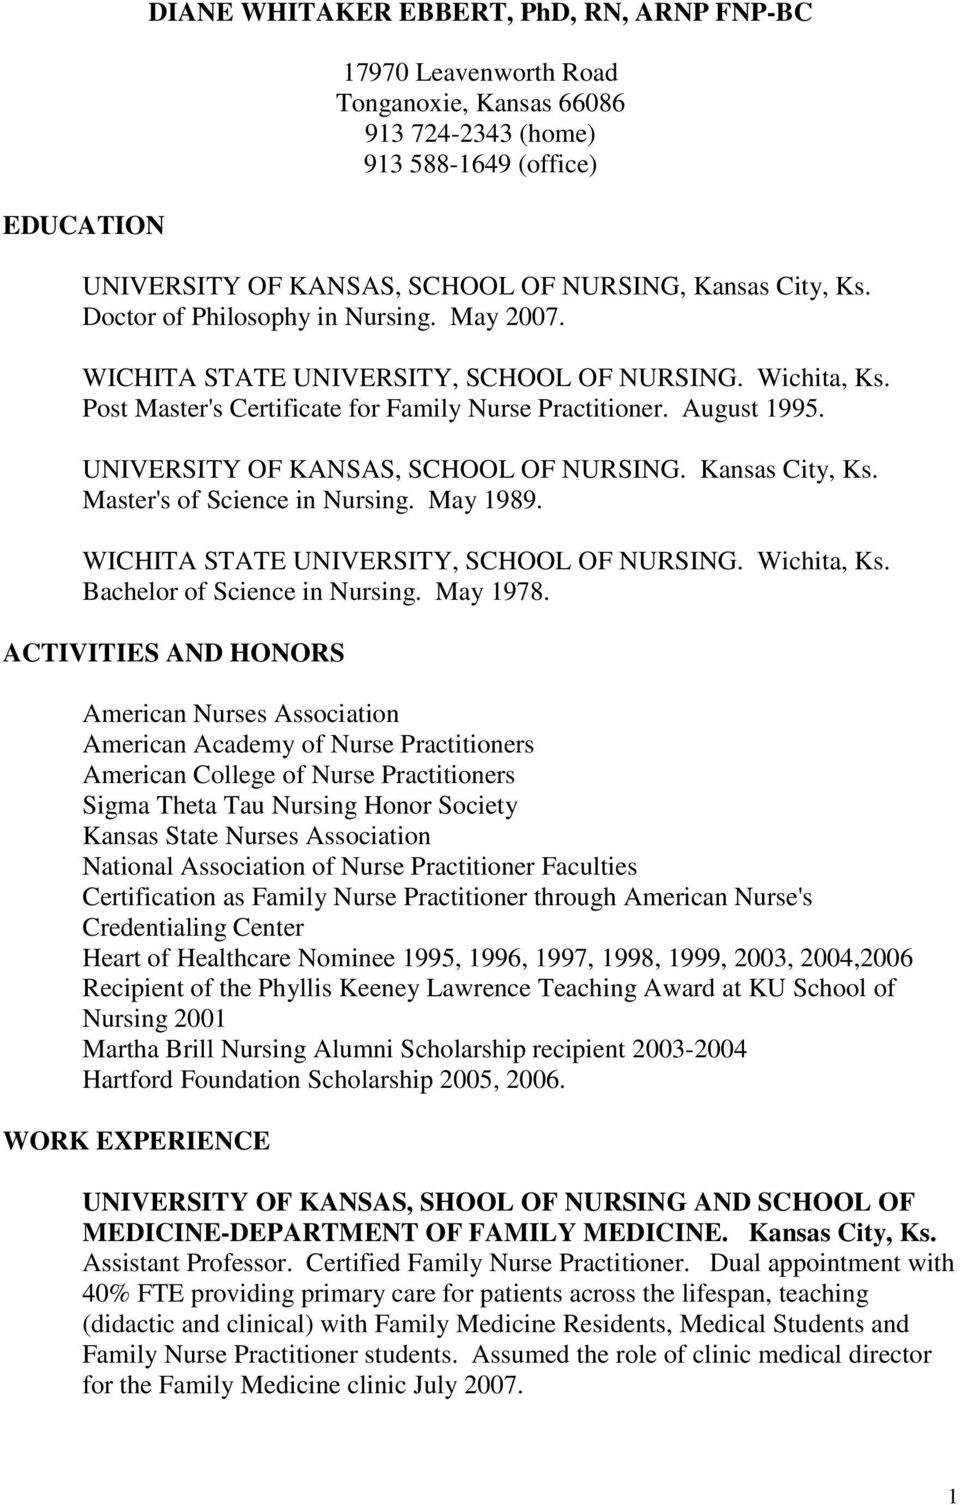 UNIVERSITY OF KANSAS, SCHOOL OF NURSING. Kansas City, Ks. Master's of Science in Nursing. May 1989. WICHITA STATE UNIVERSITY, SCHOOL OF NURSING. Wichita, Ks. Bachelor of Science in Nursing. May 1978.